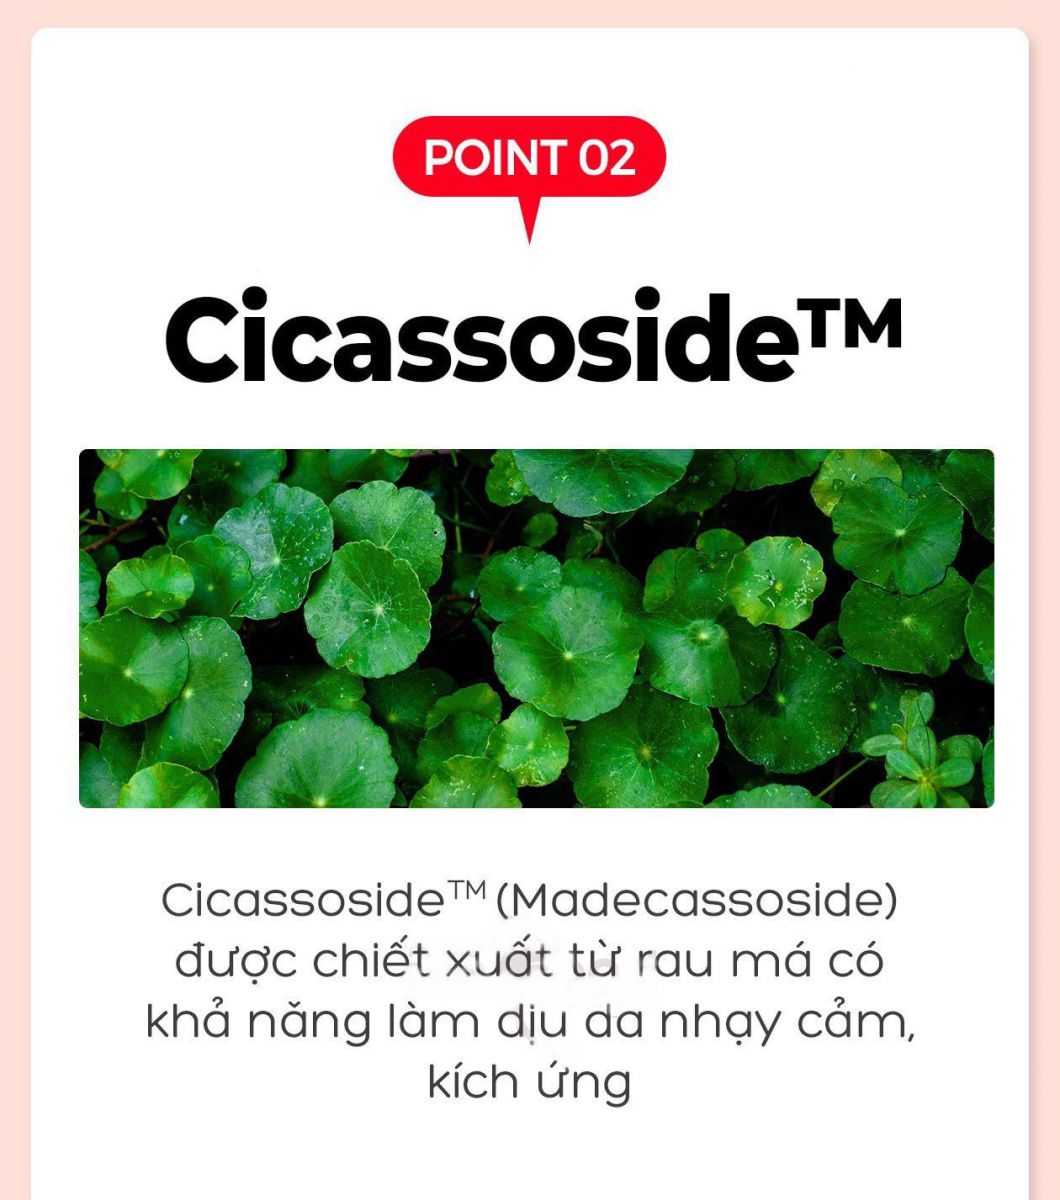 Cicassoside chiết xuất từ rau má tái tạo da, phục hồi vùng da tổn thương